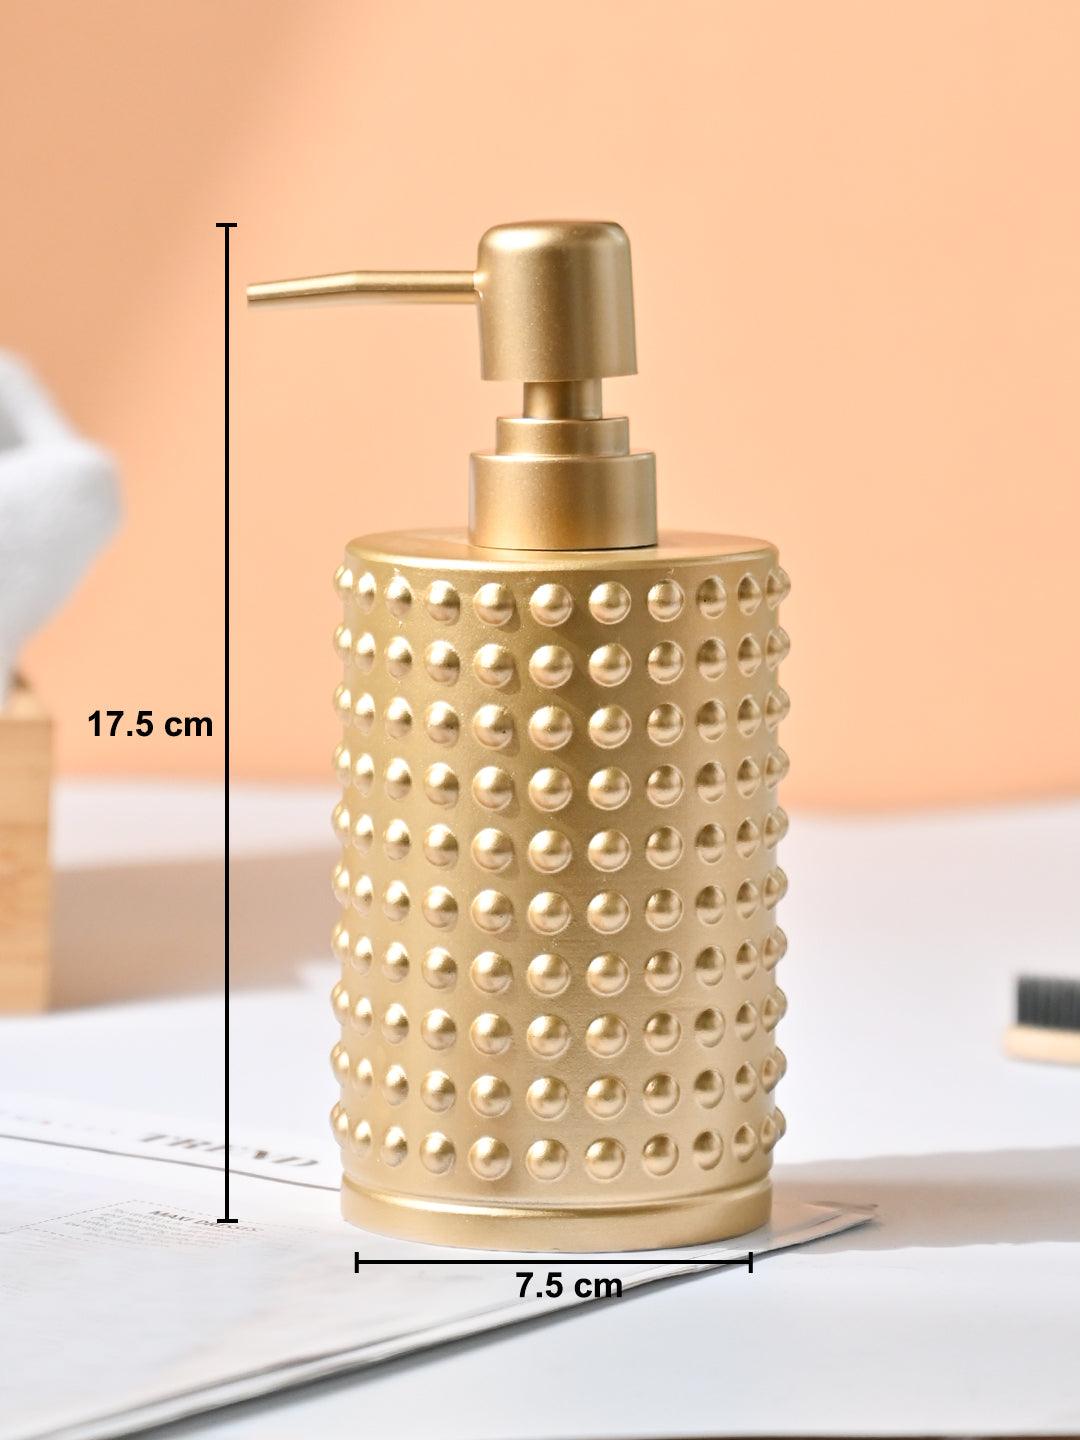 VON CASA Golden Soap Dispenser - 420Ml